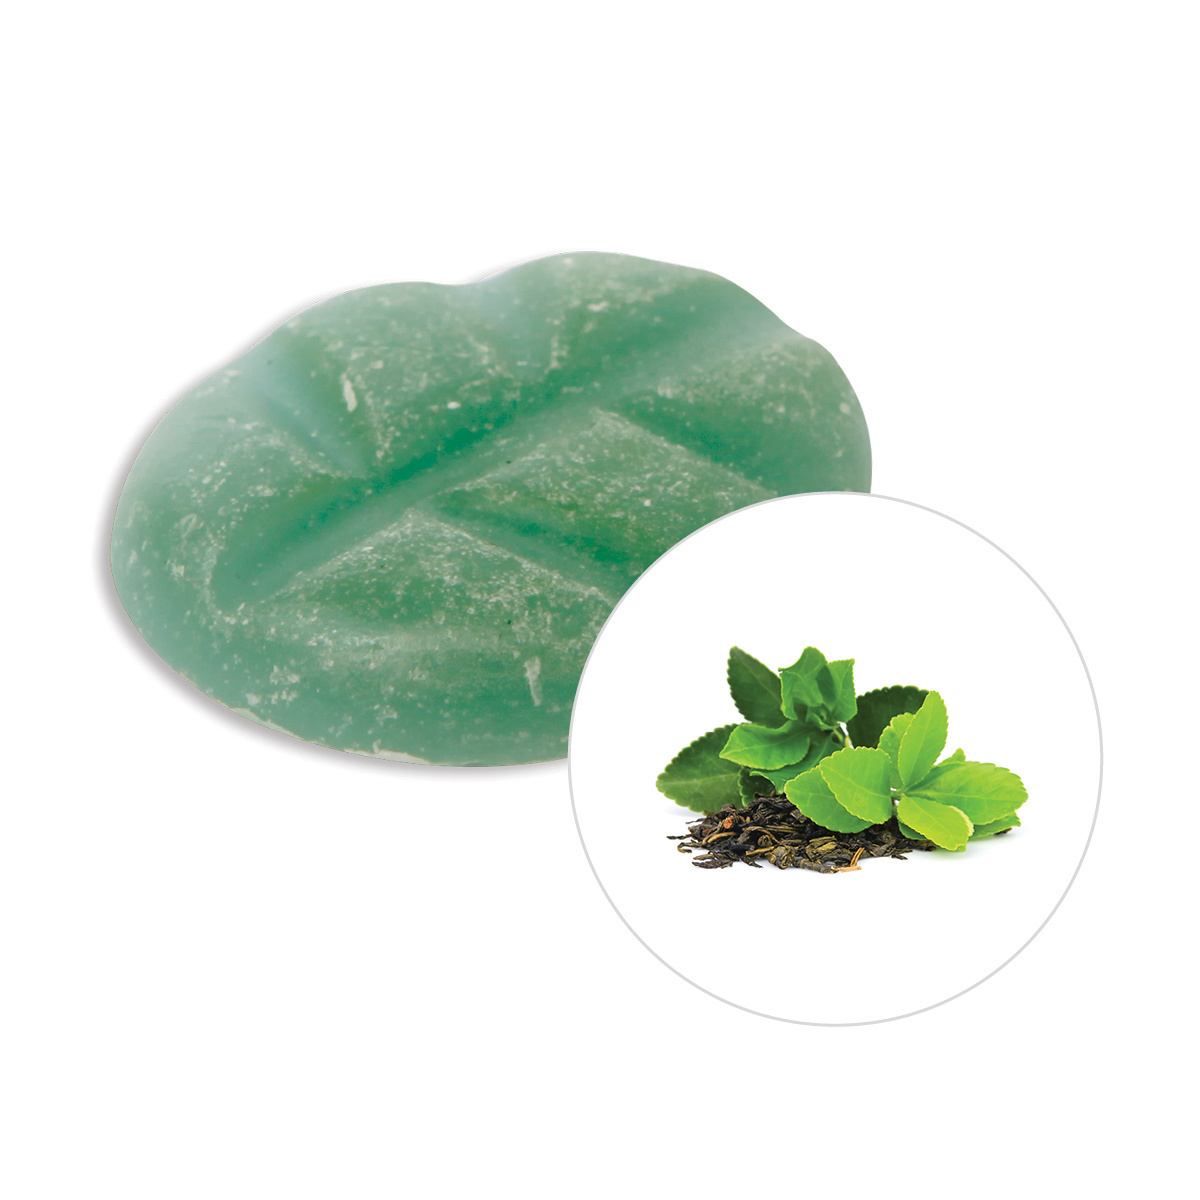 Scentchips® Grüner Tee Duftchips XL